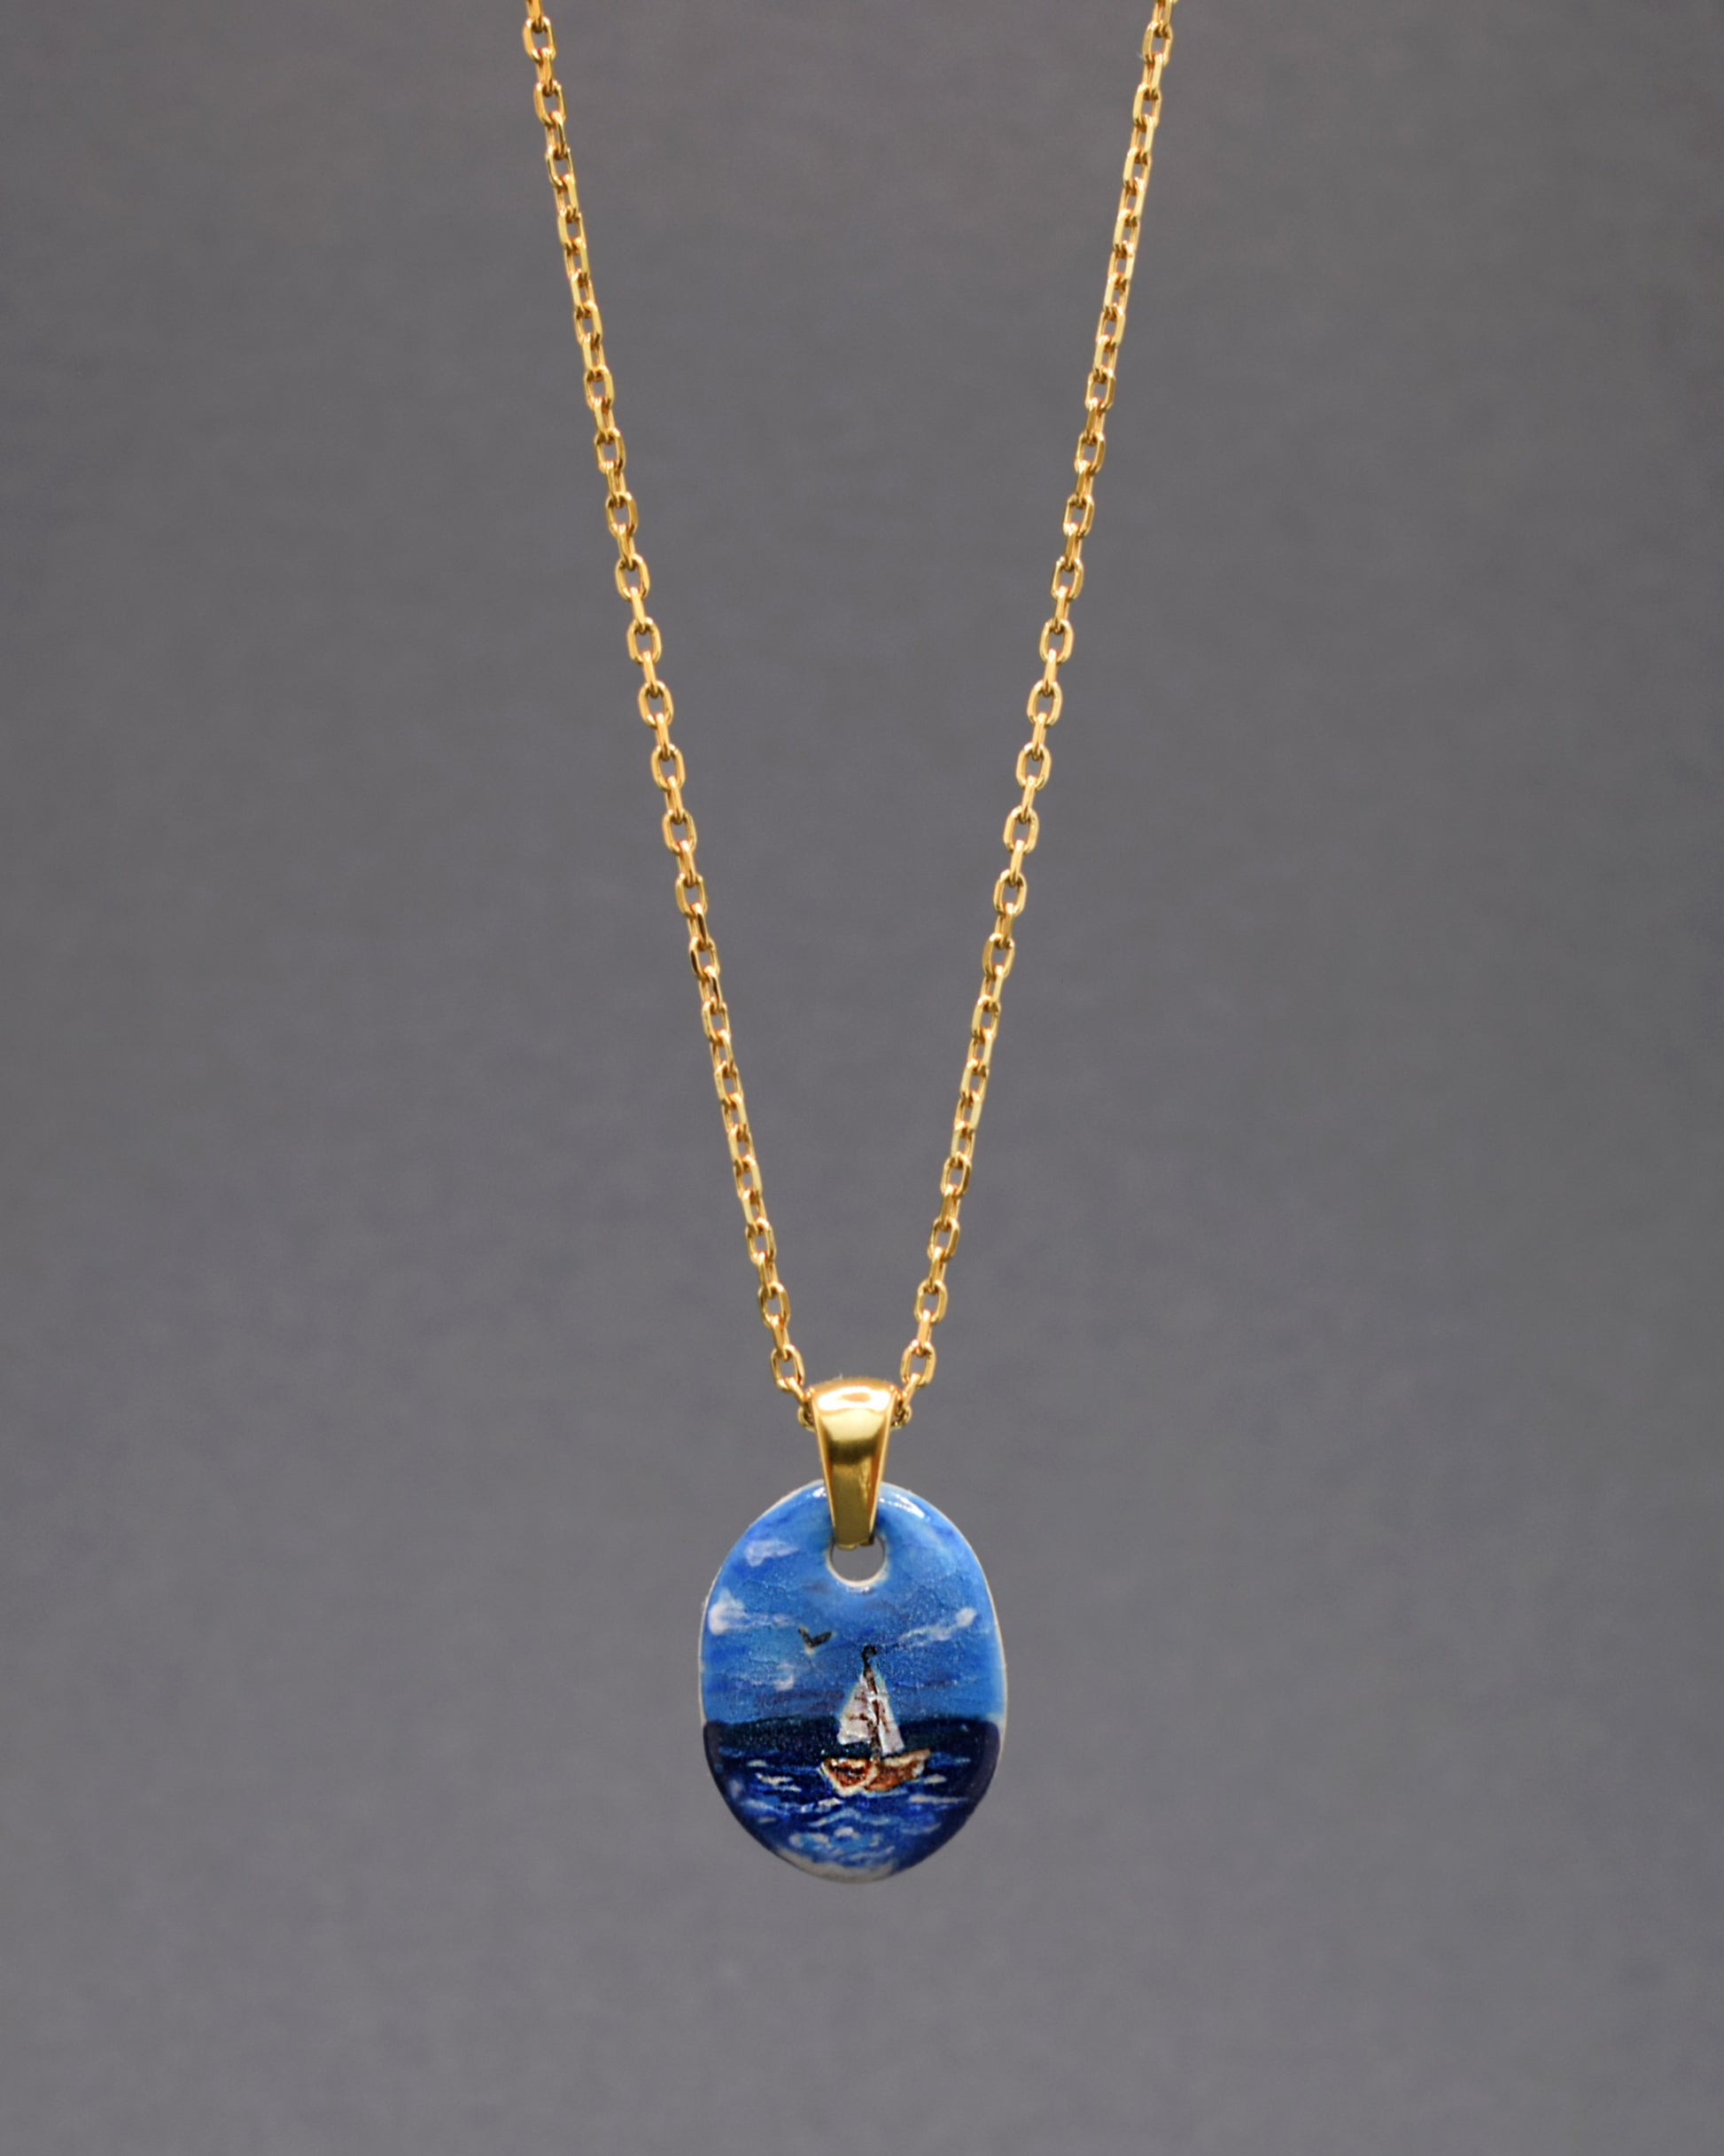 Radiante em cada detalhe! Apresentamos o nosso colar exclusivo com um pendente de cerâmica - um magnífico Barco em Alto Mar, perfeitamente complementado pela corrente de aço inoxidável dourado. Um toque de sofisticação que ilumina o seu estilo.